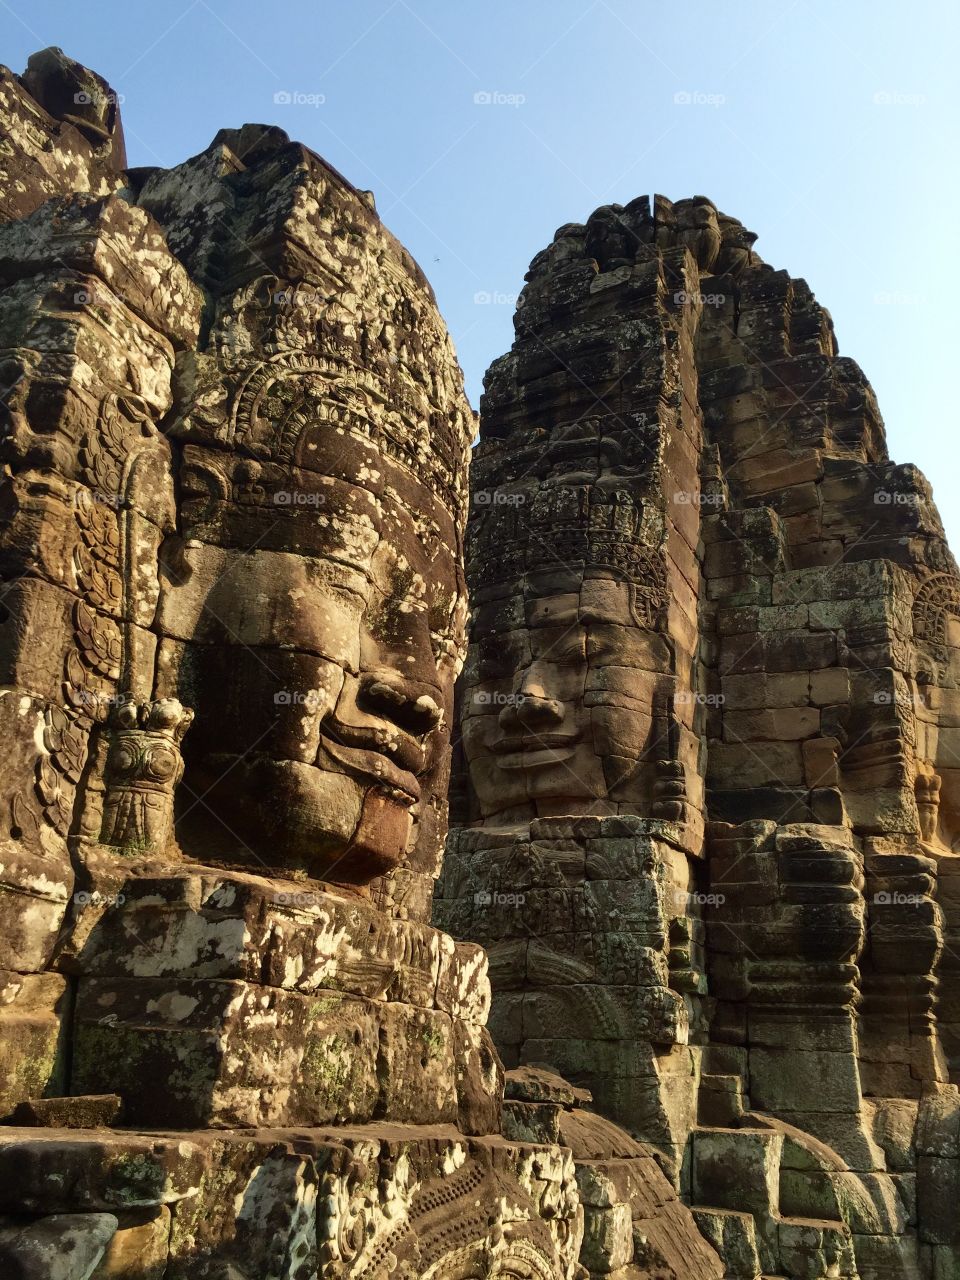 Smiling Buddha face Angkor 